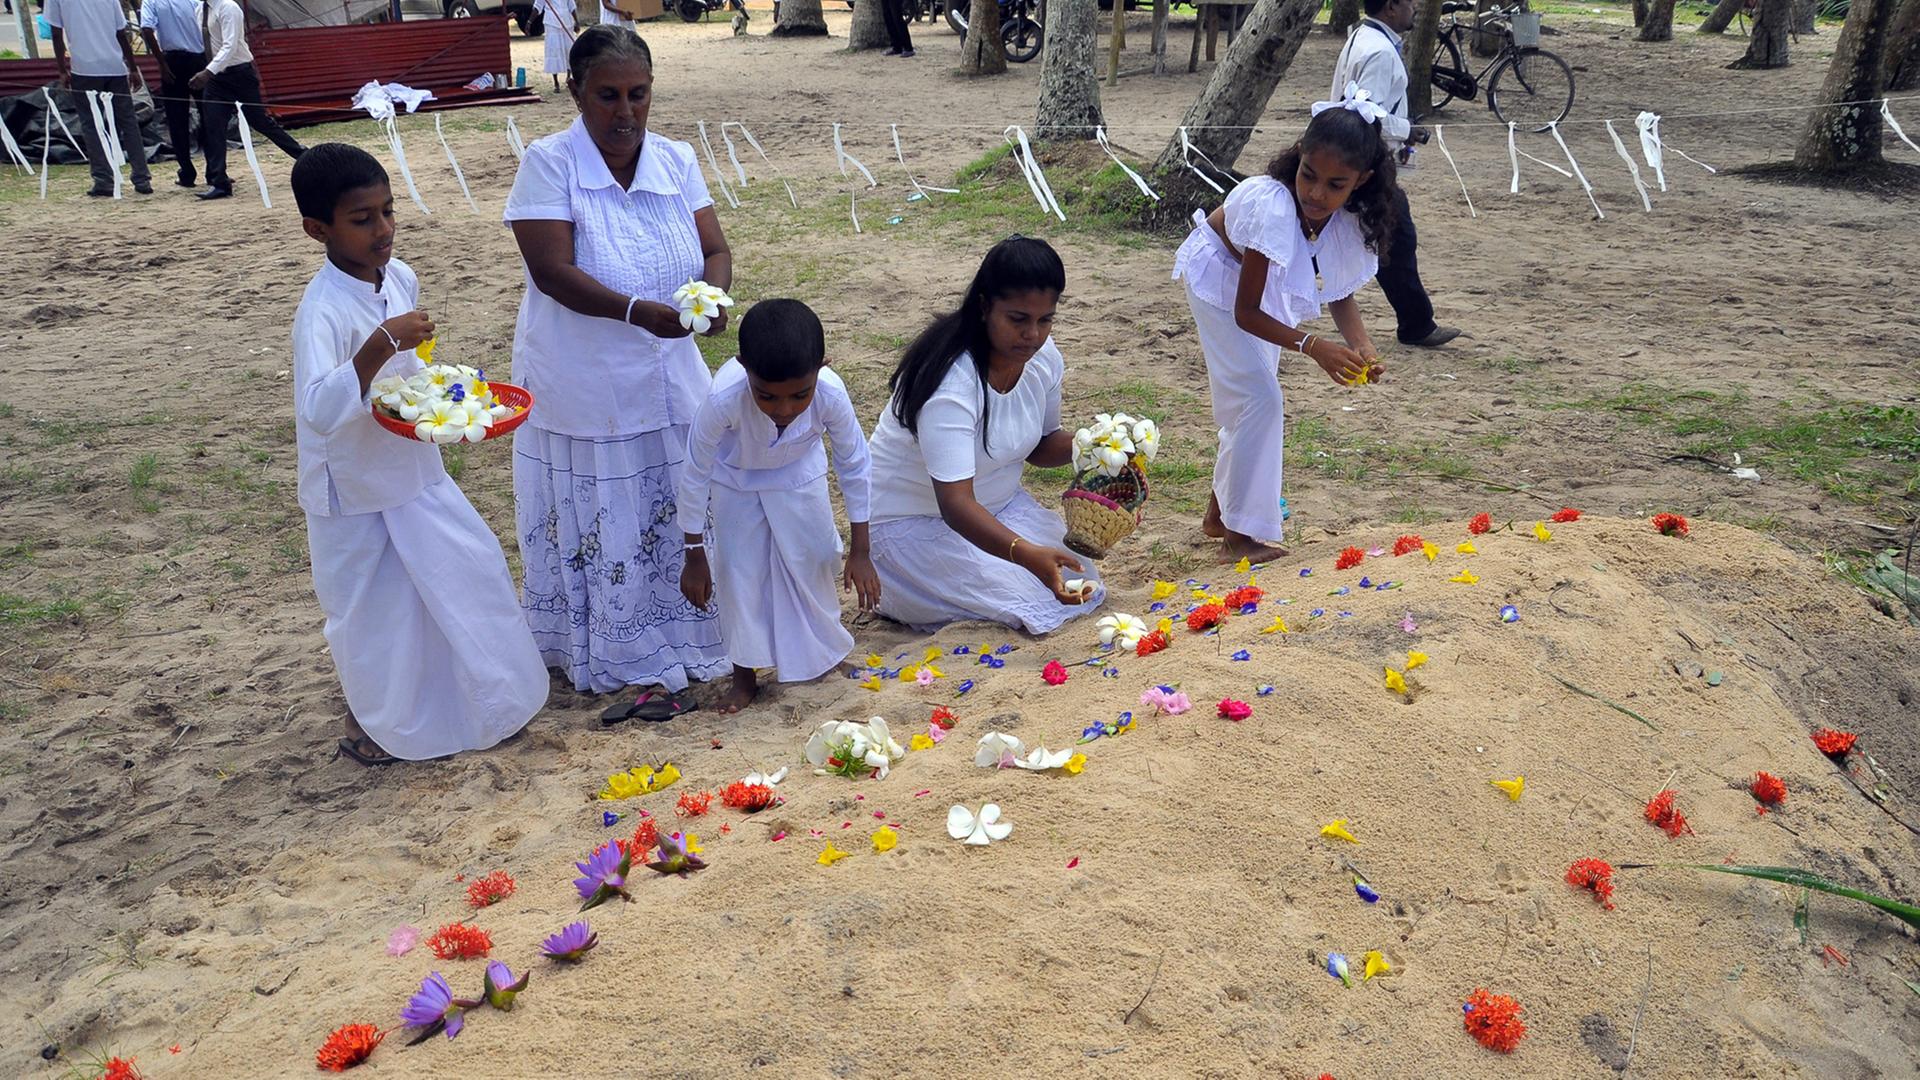 Trauernde legen Blumen an Gräbern von Tsunami-Opfern ab, die der Flutwelle vom Dezember 2004 zum Opfer fielen.